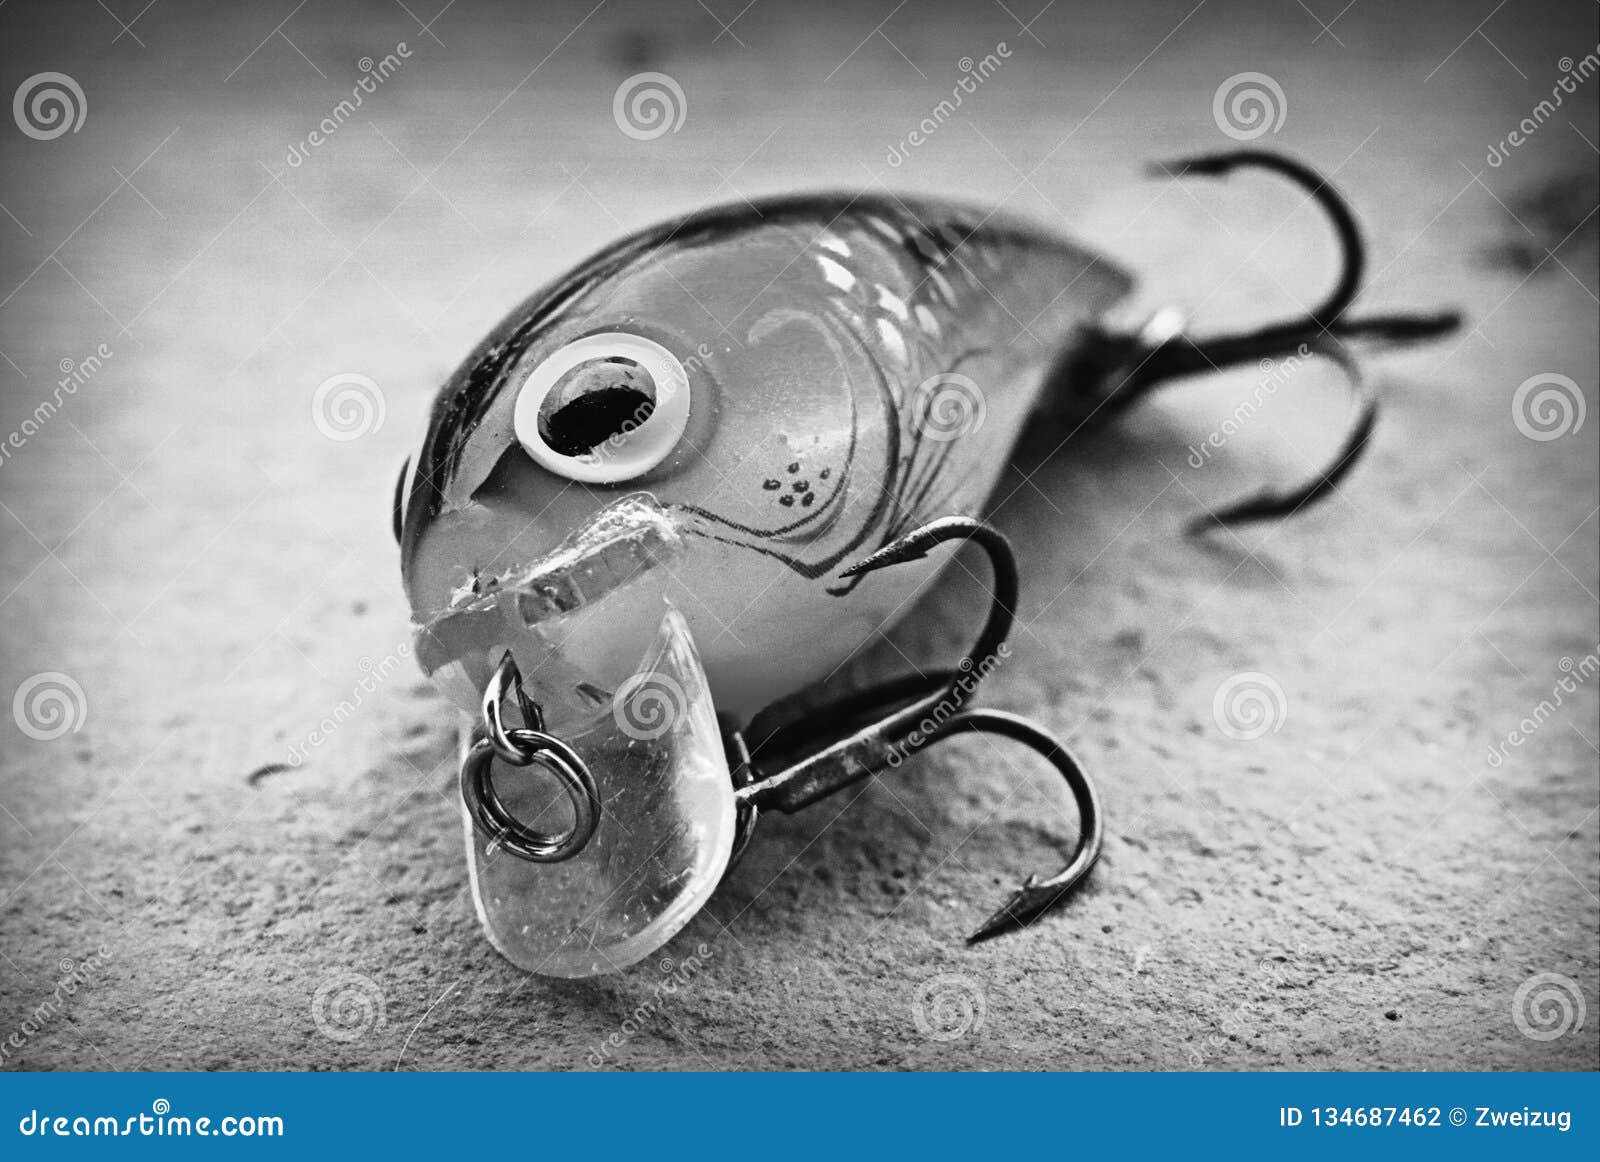 Storm Wiggle Wart Fishing Lure Plug Stock Photo - Image of parachute,  mayfly: 134687462